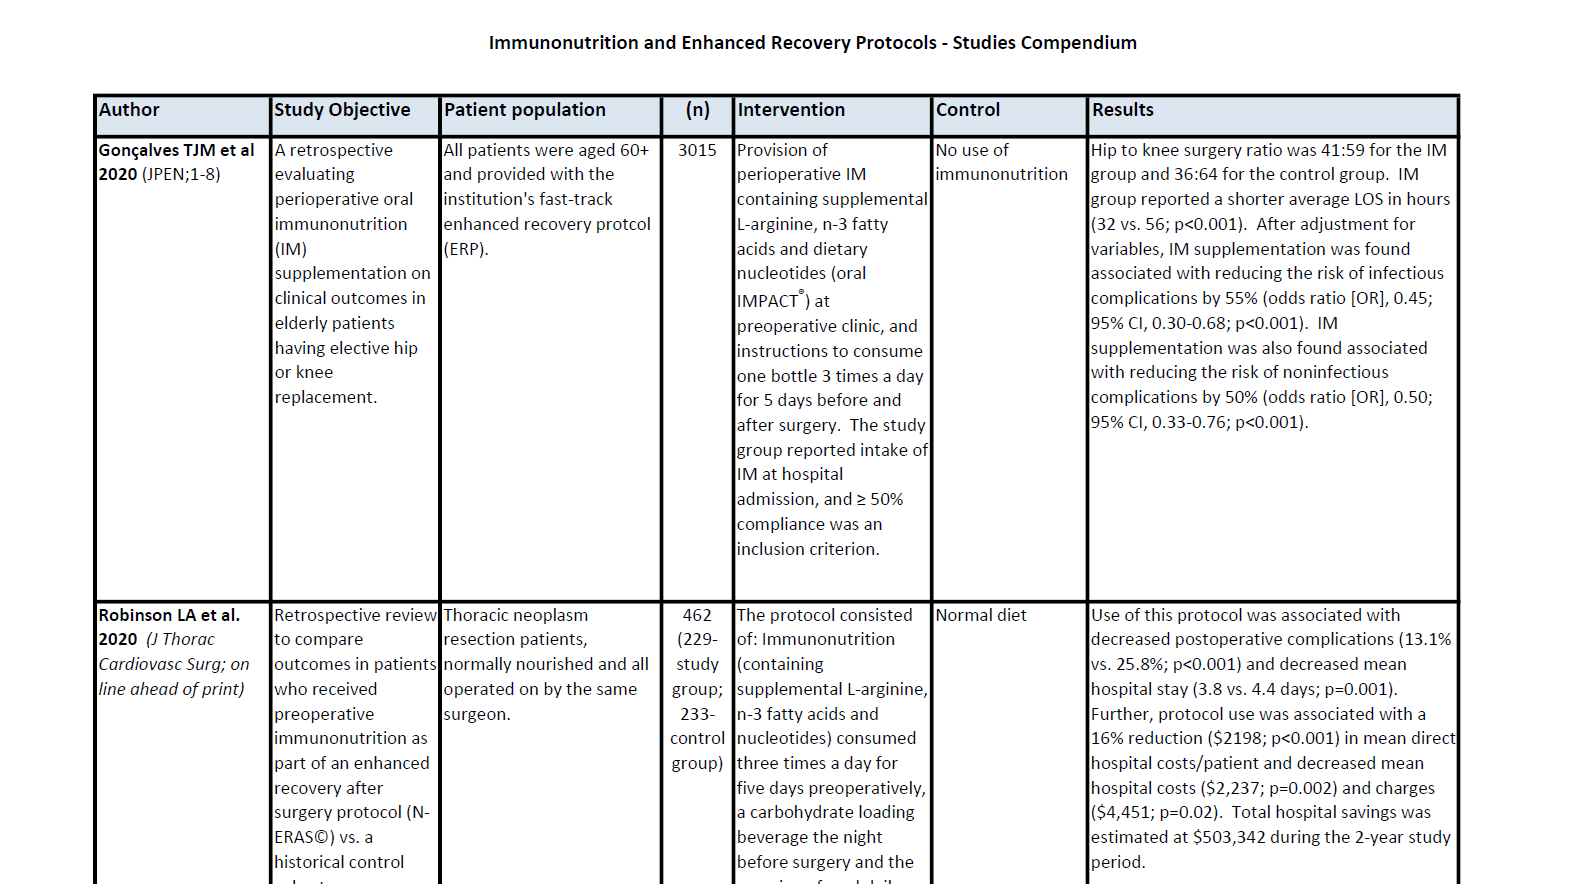 Immunonutrition Studies Compendium (March 2021)